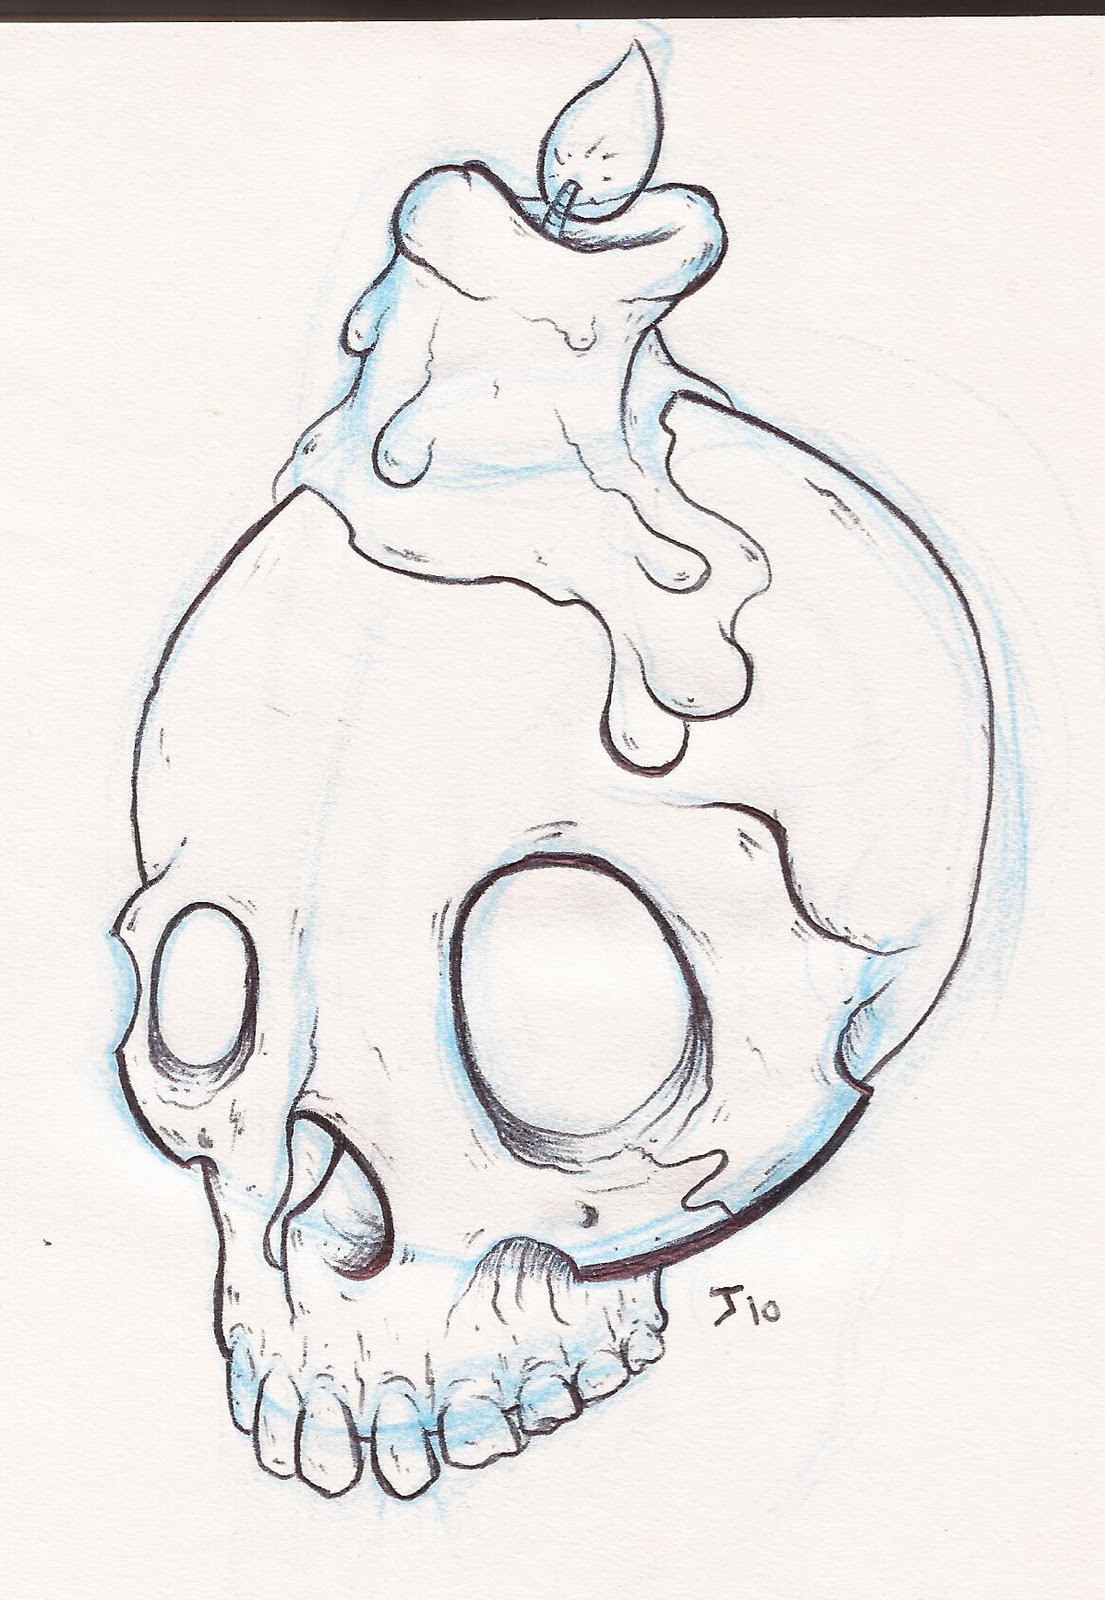 GnarBlog: More skulls?